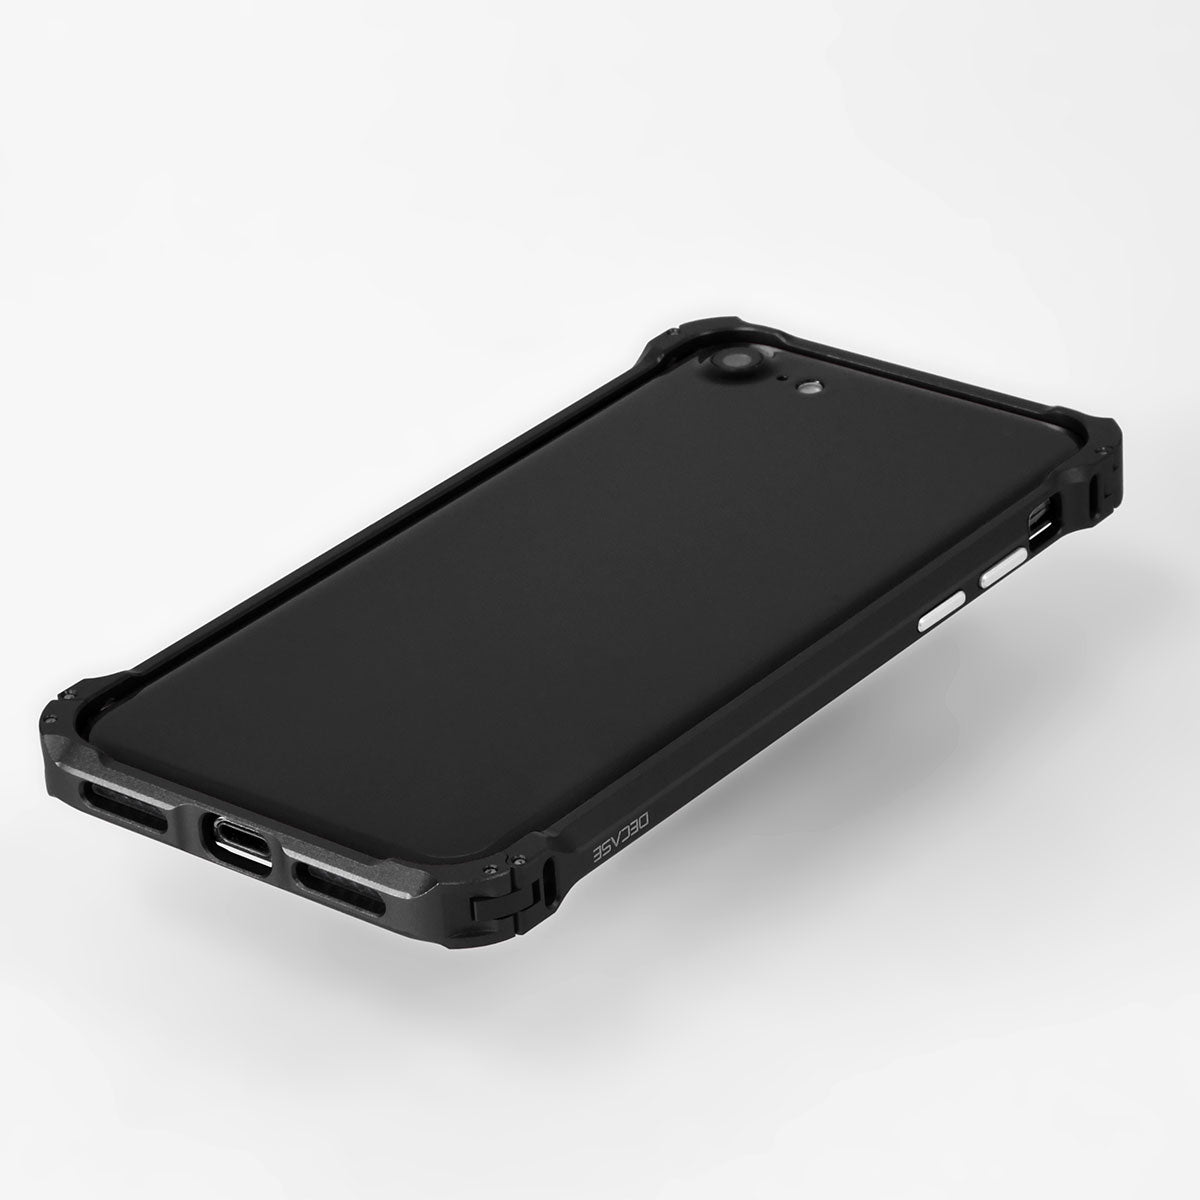 iPhone SE 2020 aluminum bumper case